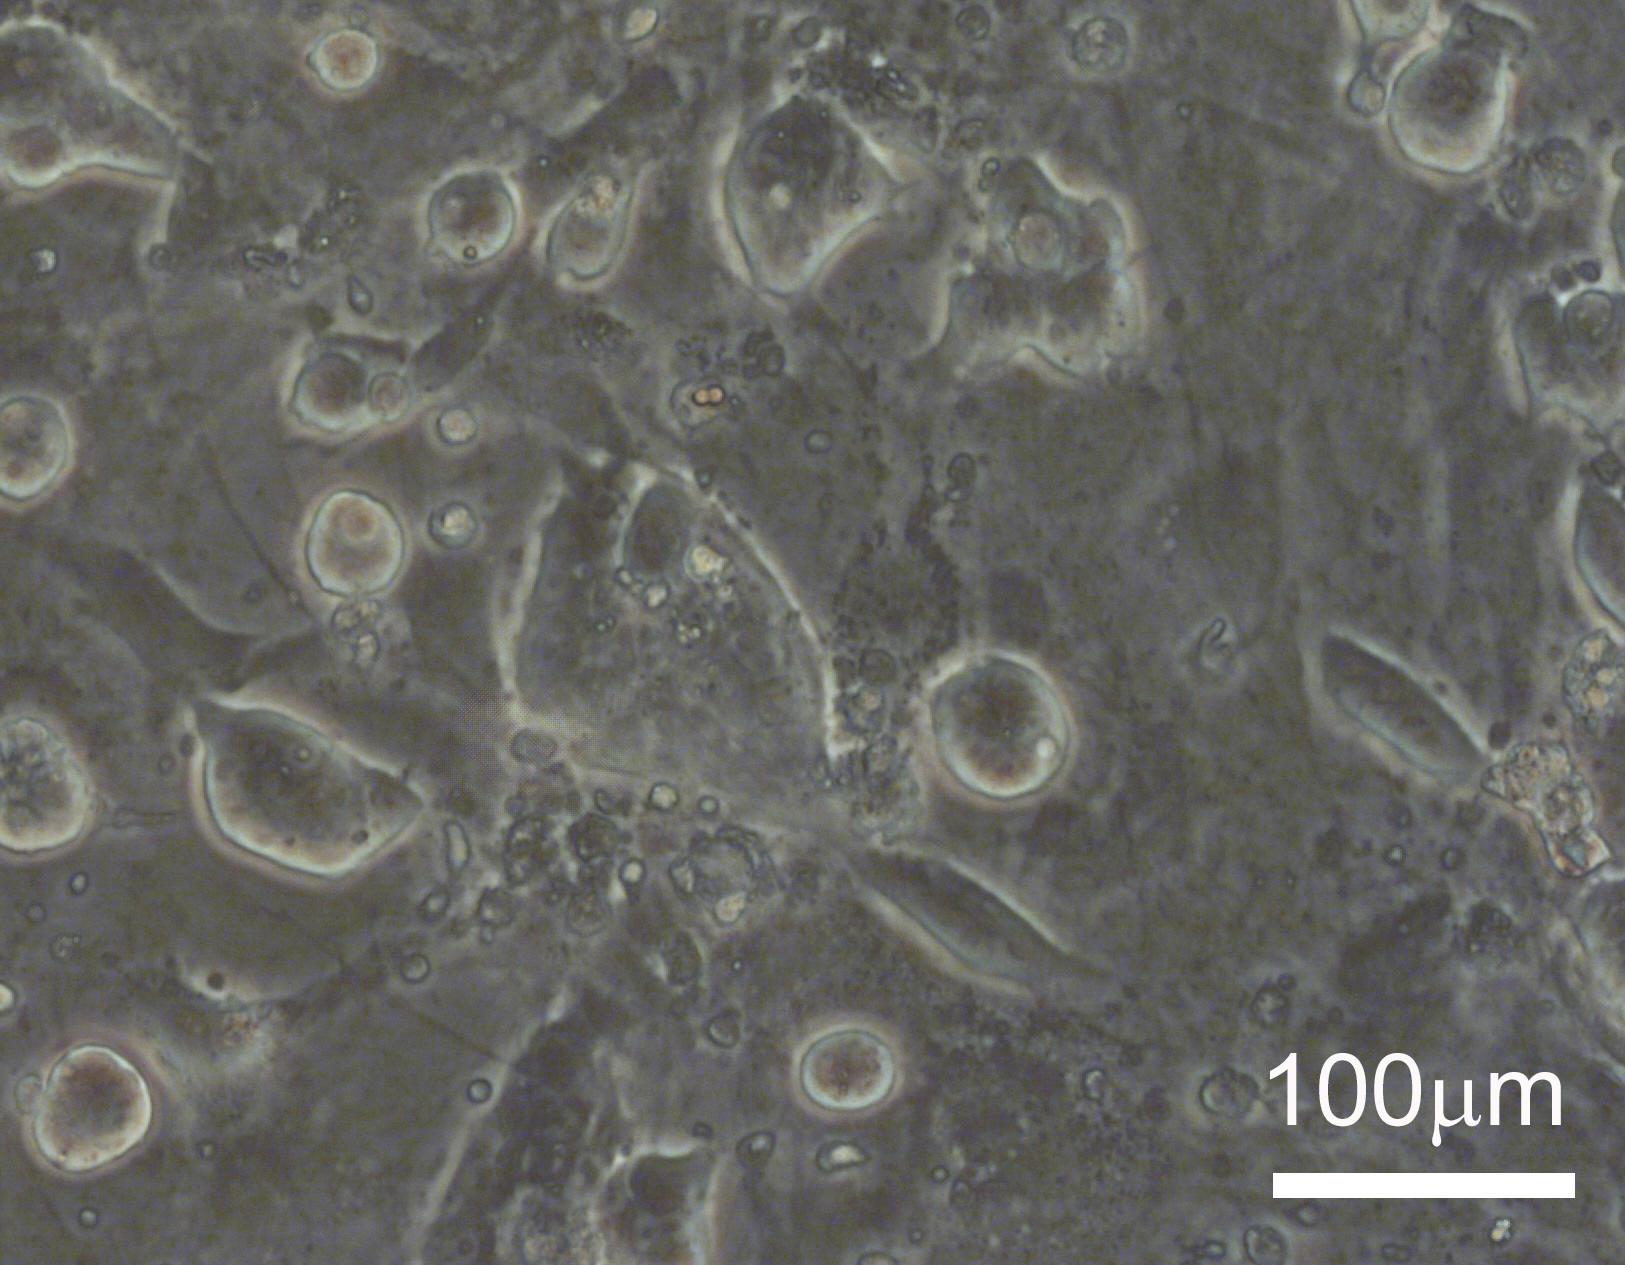 Epiblast-like marmoset embryonic stem cells